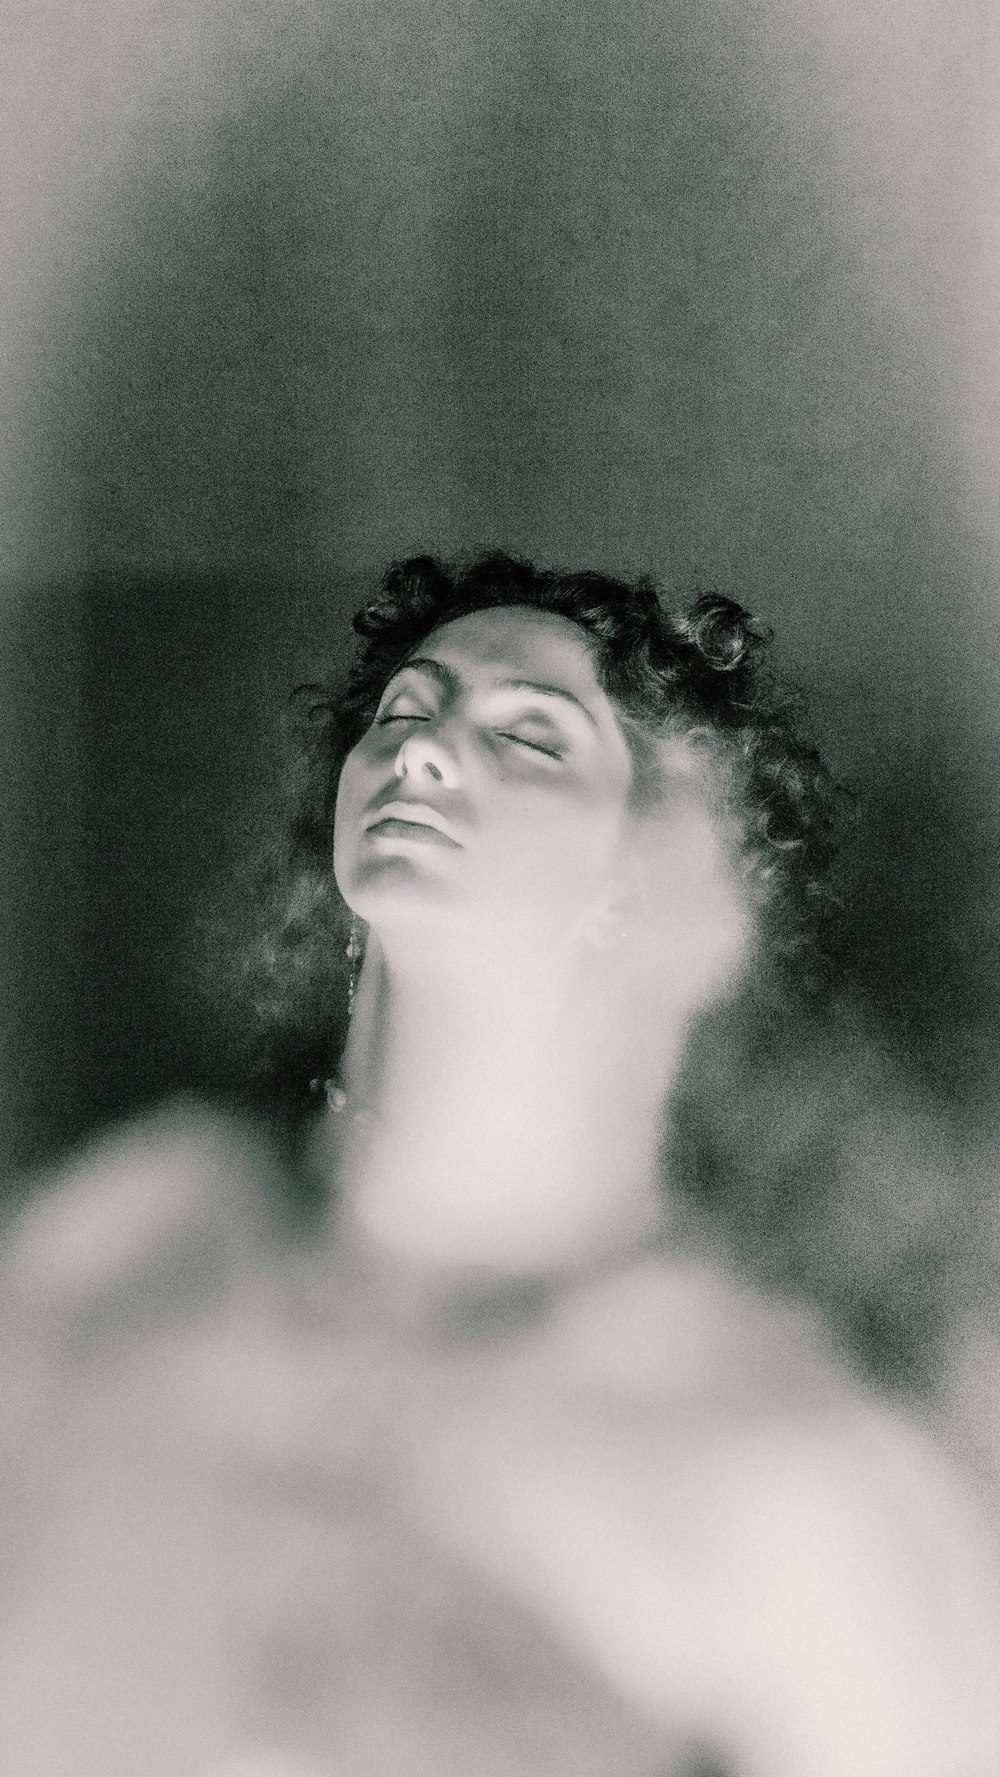 눈을 감고 있는 여성의 흑백 사진